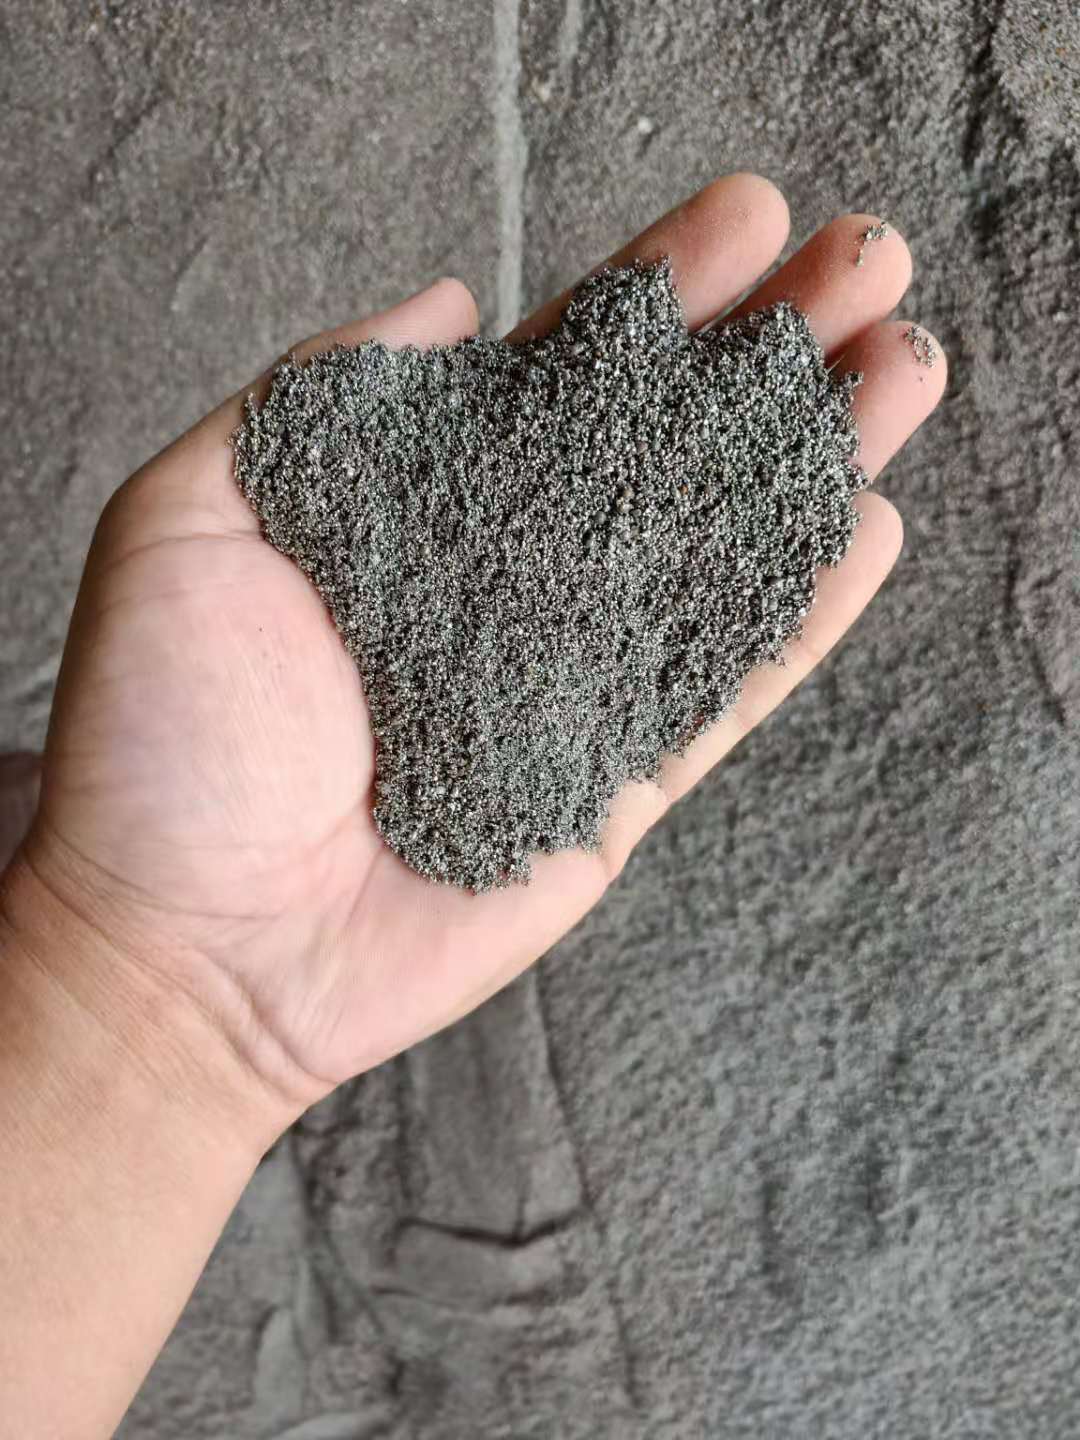 配重砂堆积密度大具有较强的耐磨损性能